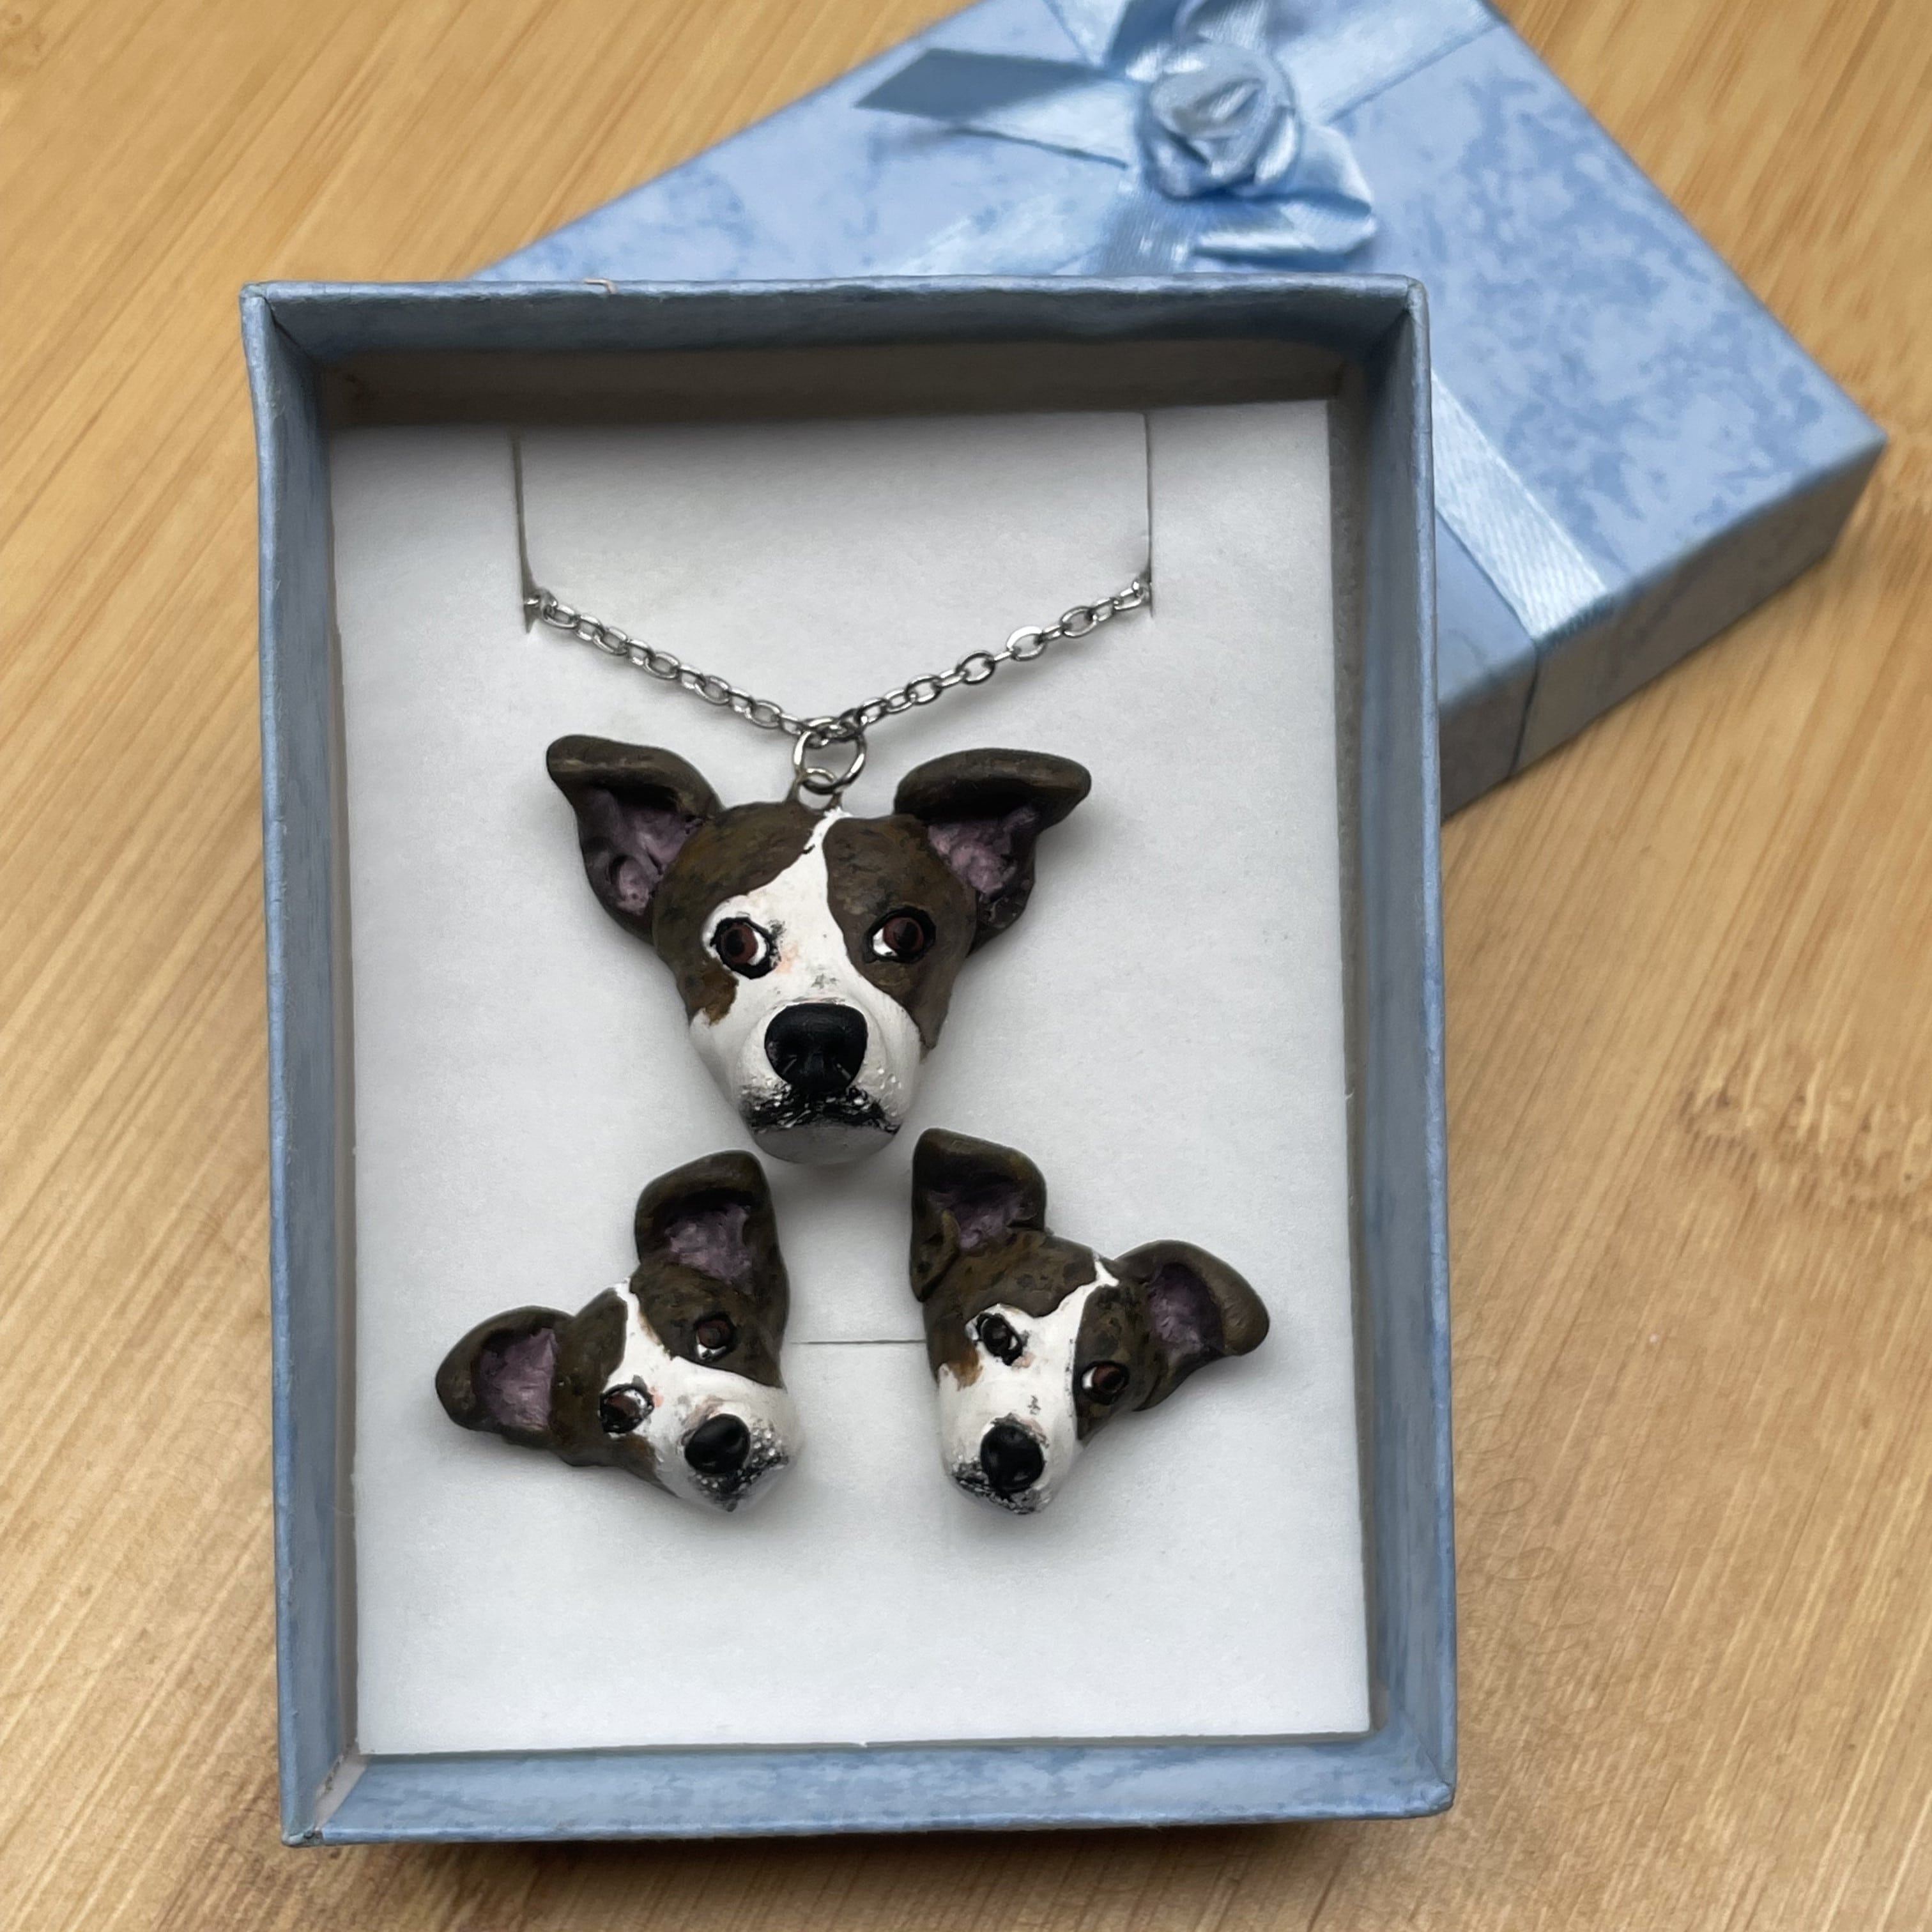 Dog Necklace, Dog Name Necklace, Custom Dog Necklace, Dog Memorial Necklace,  Dog Necklace for Women, Dog Silhouette Necklace, Dog Mom Gifts - Etsy